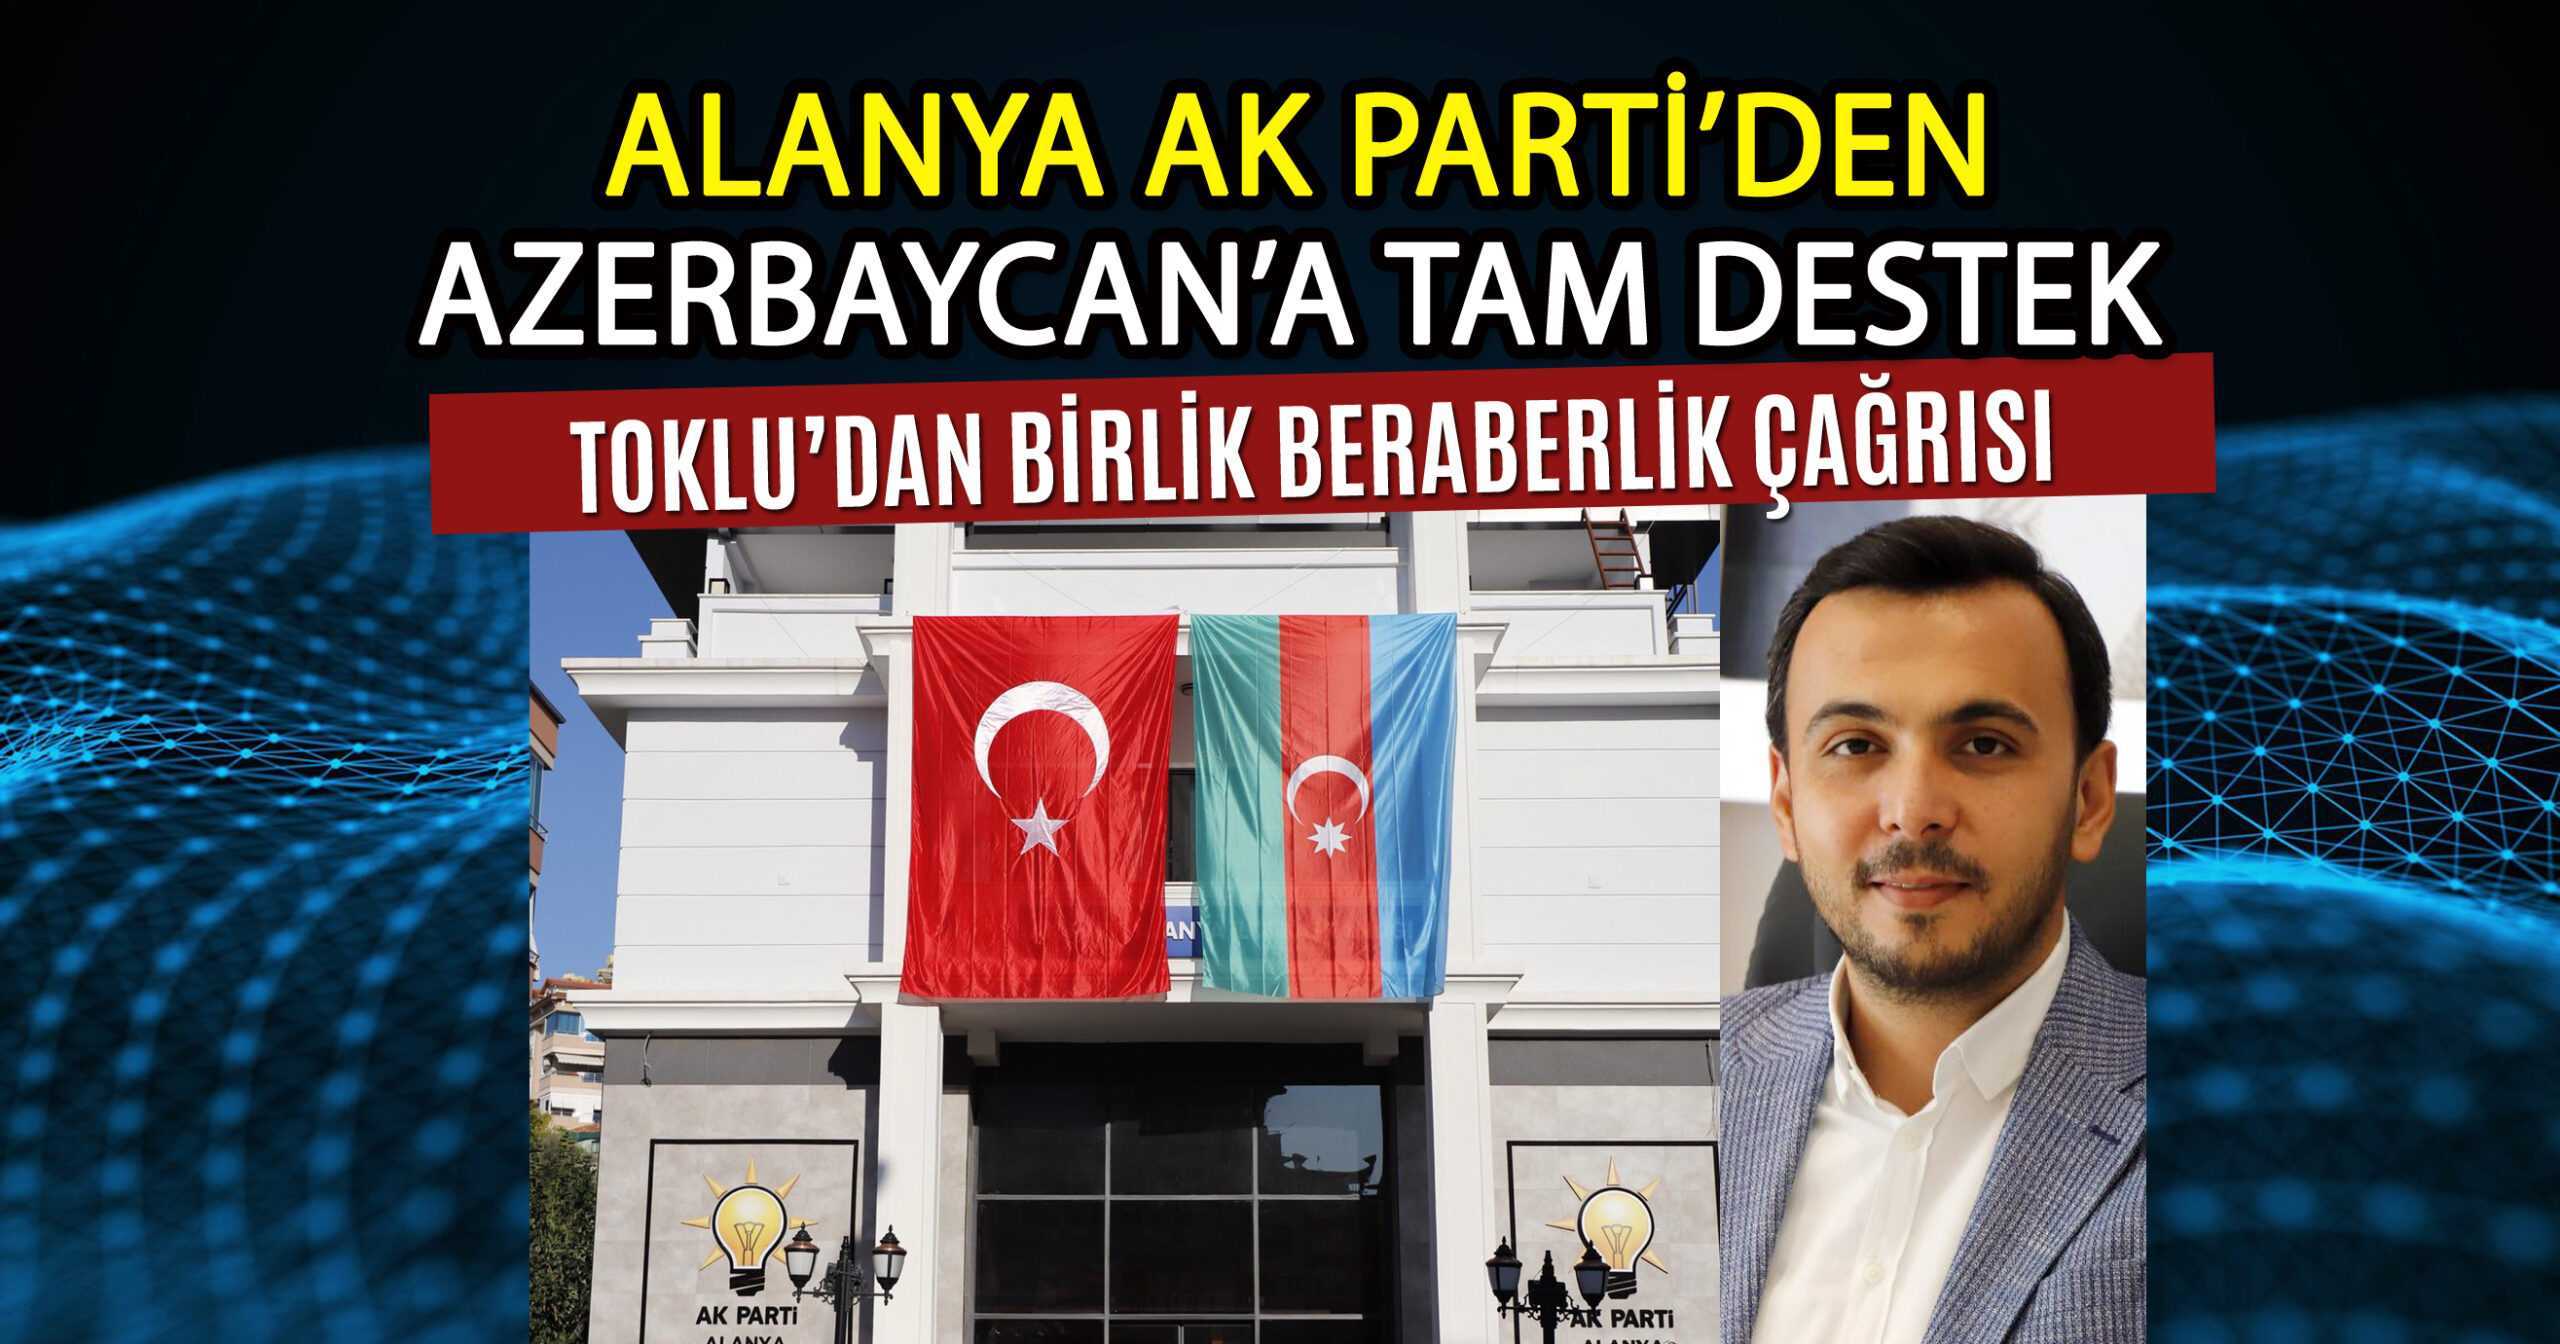 TOKLU’DAN AZERBAYCAN’A TAM DESTEK